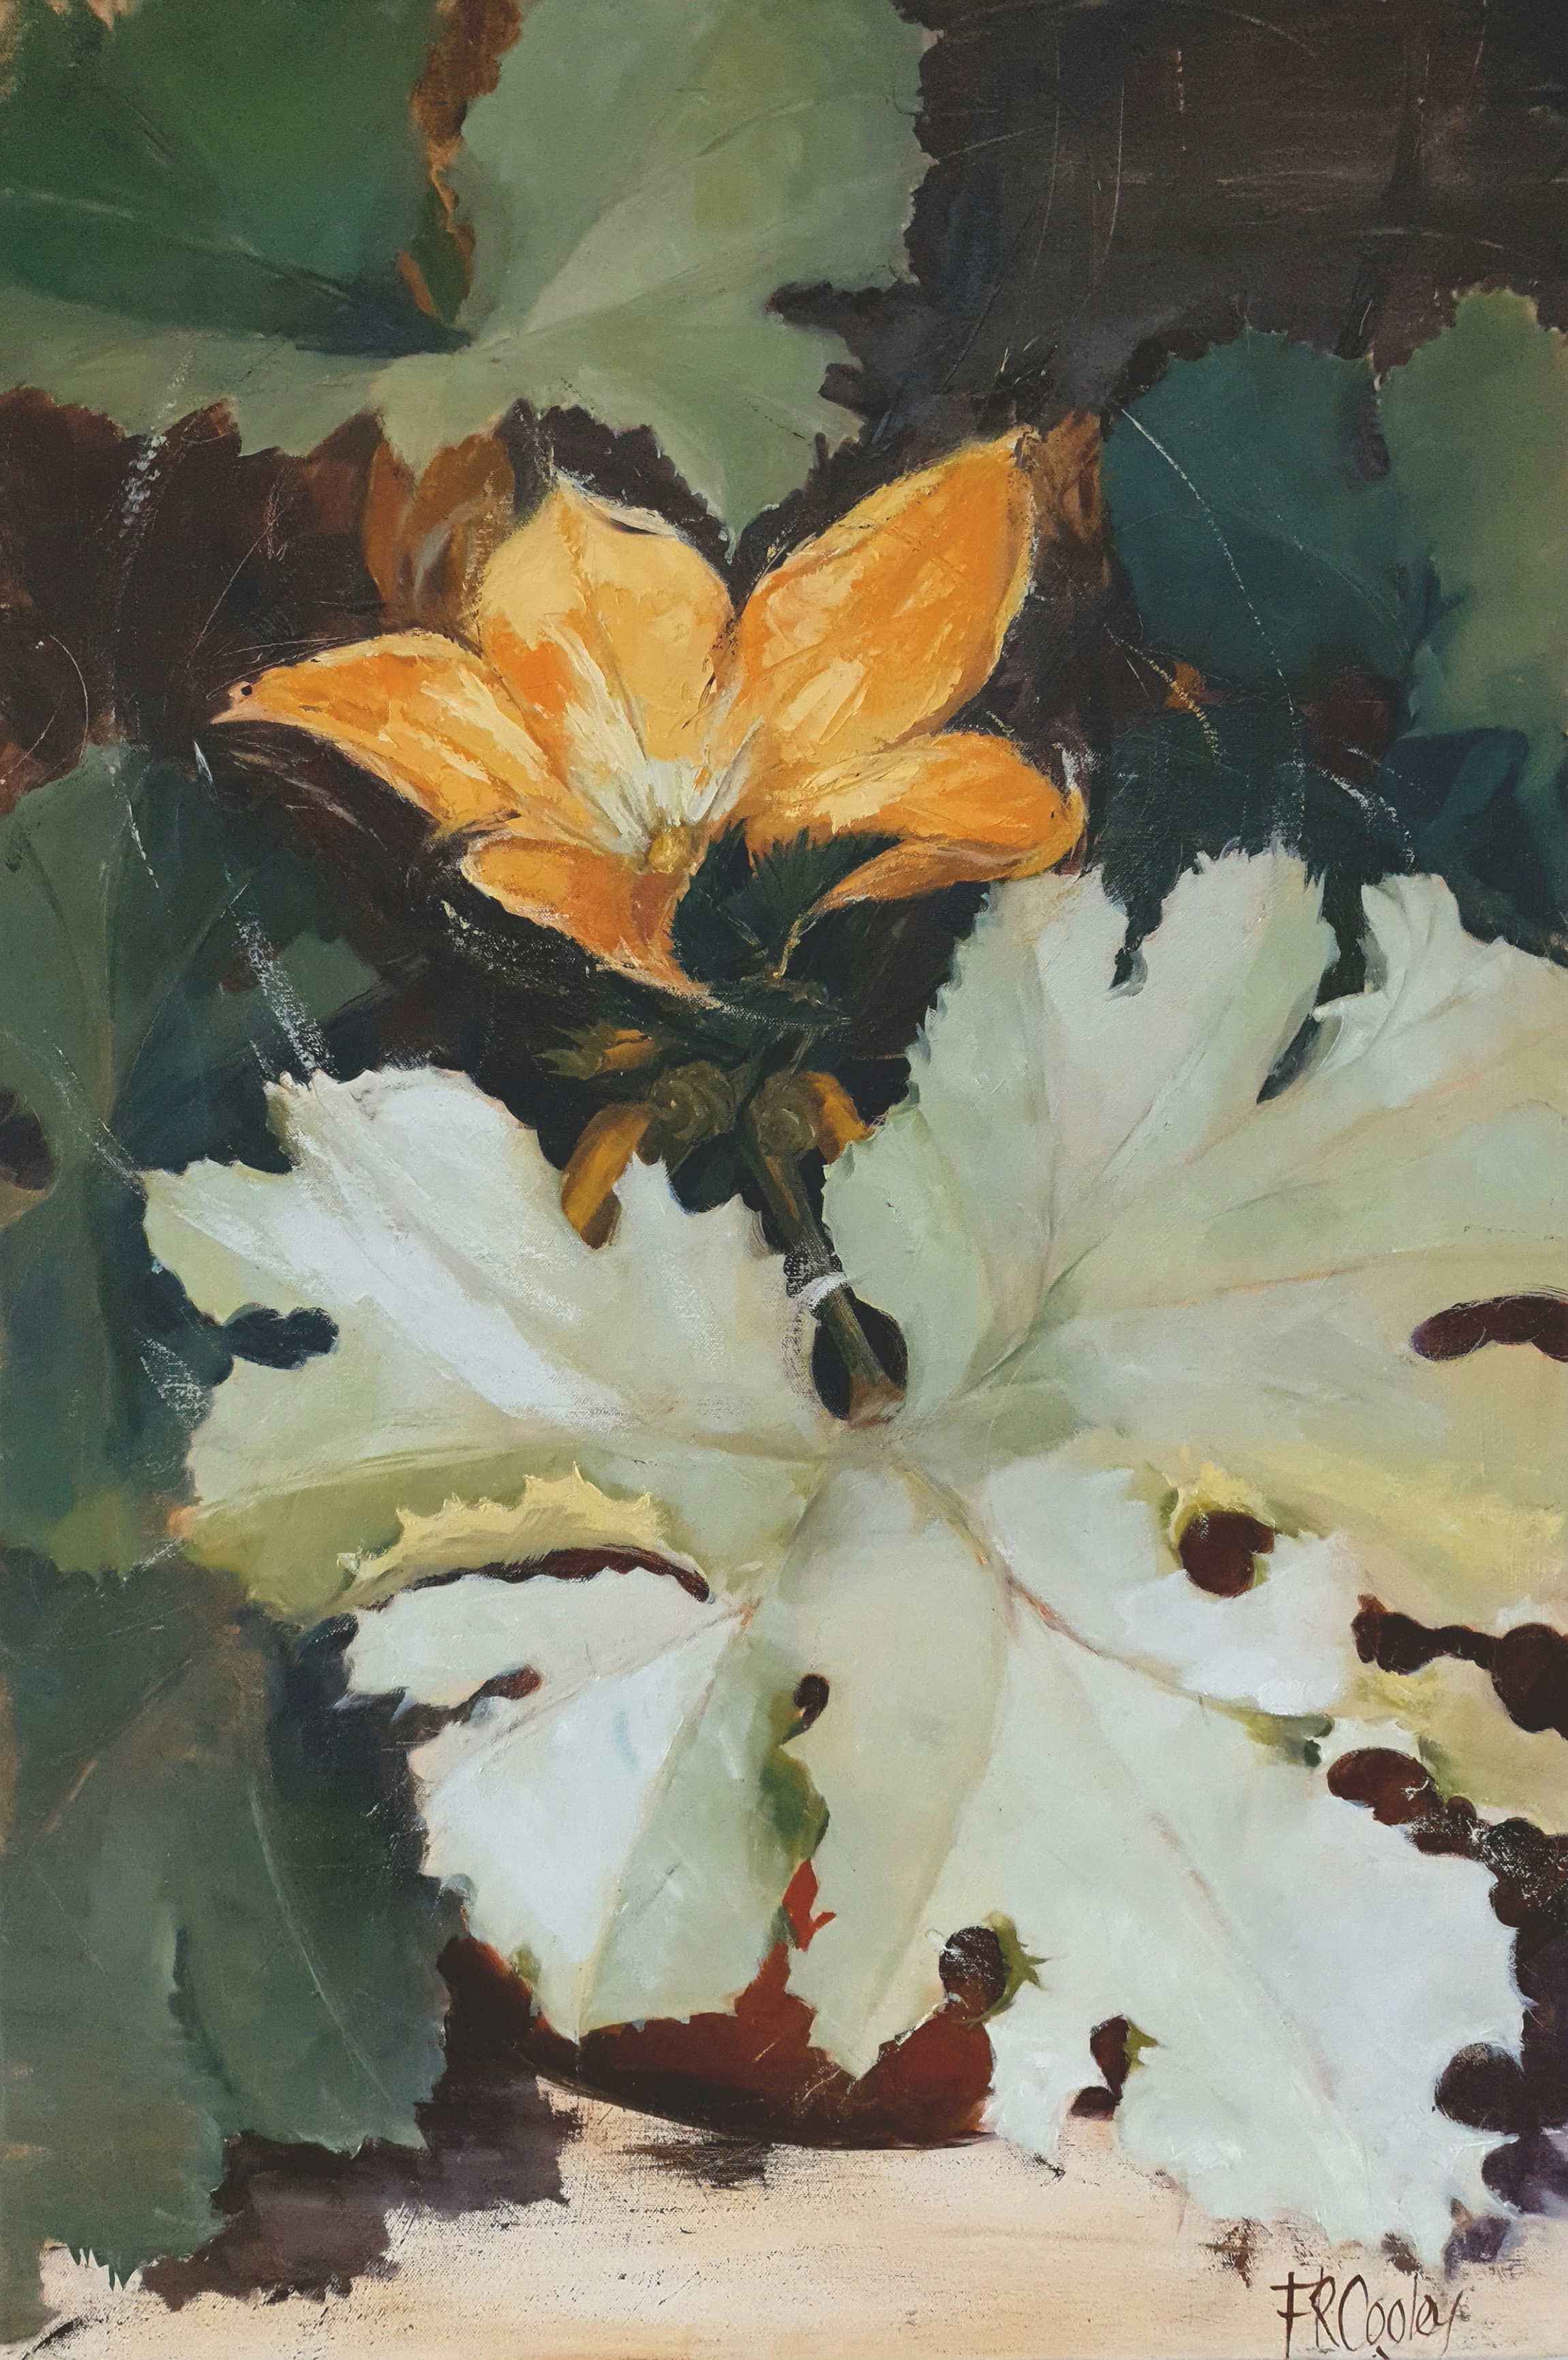 'Courgette flower', Frances Cooley, Oil on Canvas, 110 x 75 cm